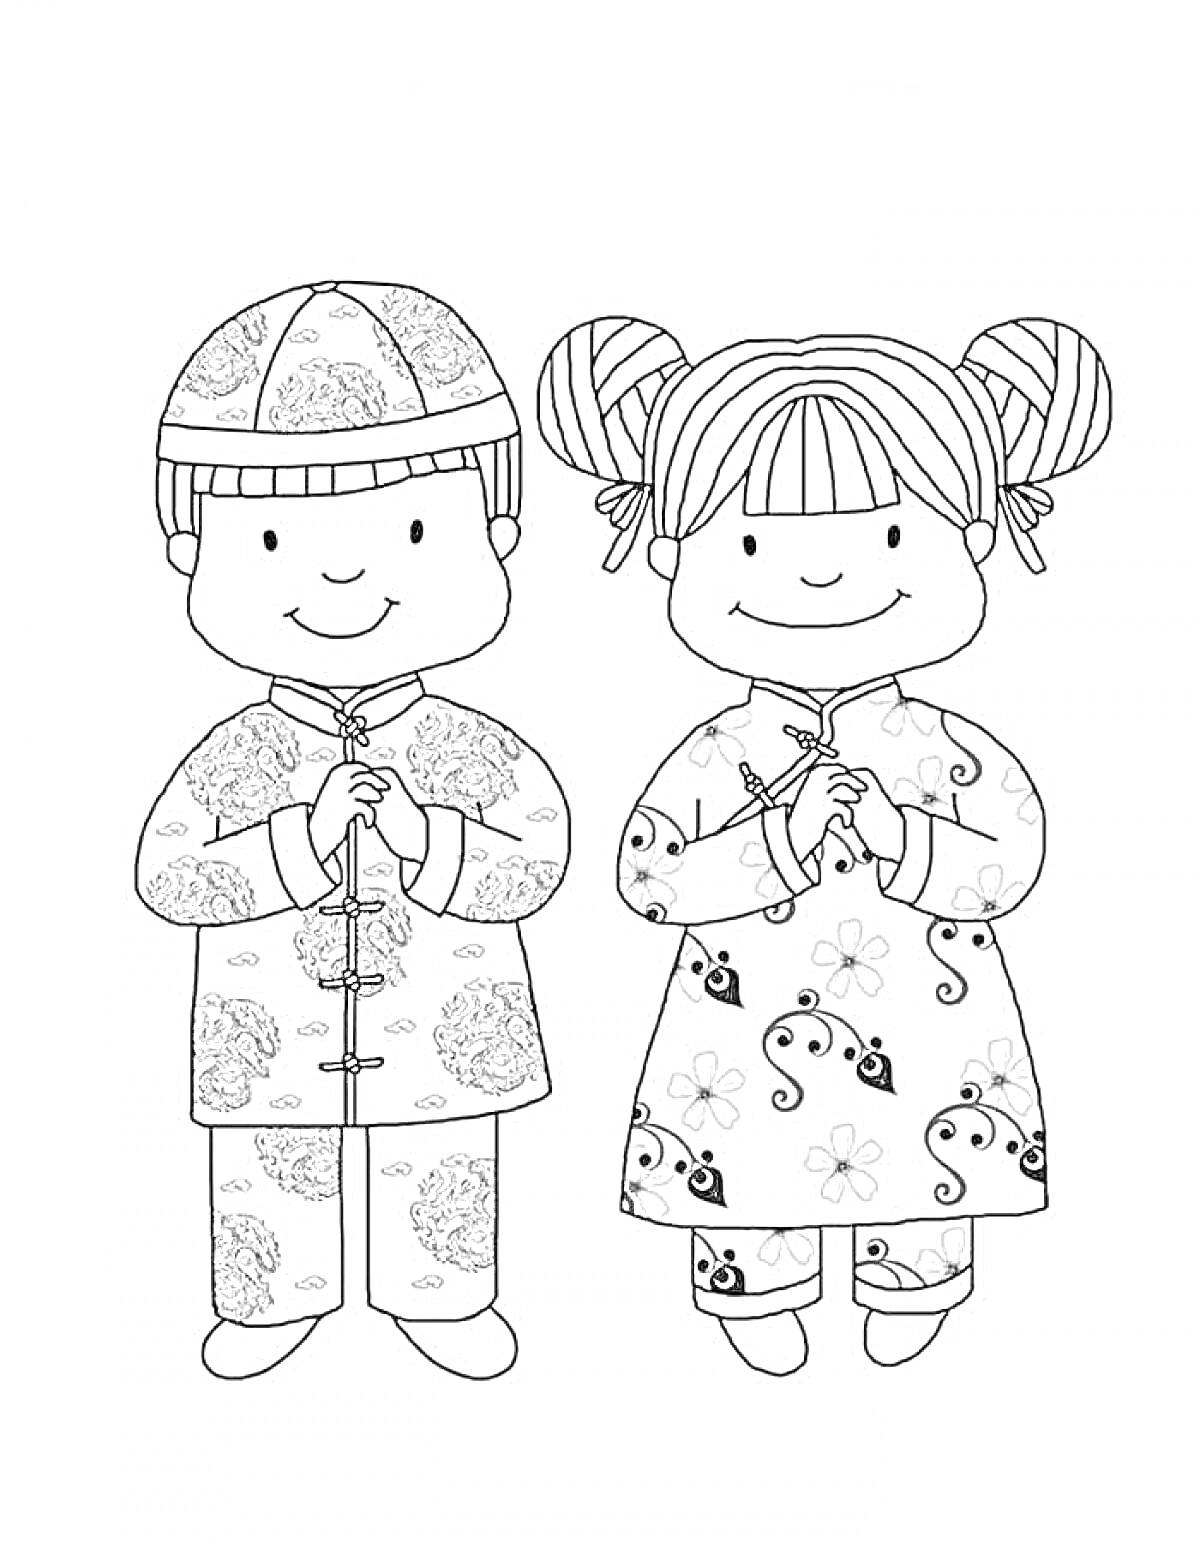 Девочка и мальчик в традиционной китайской одежде с узорами, приветствуют друг друга